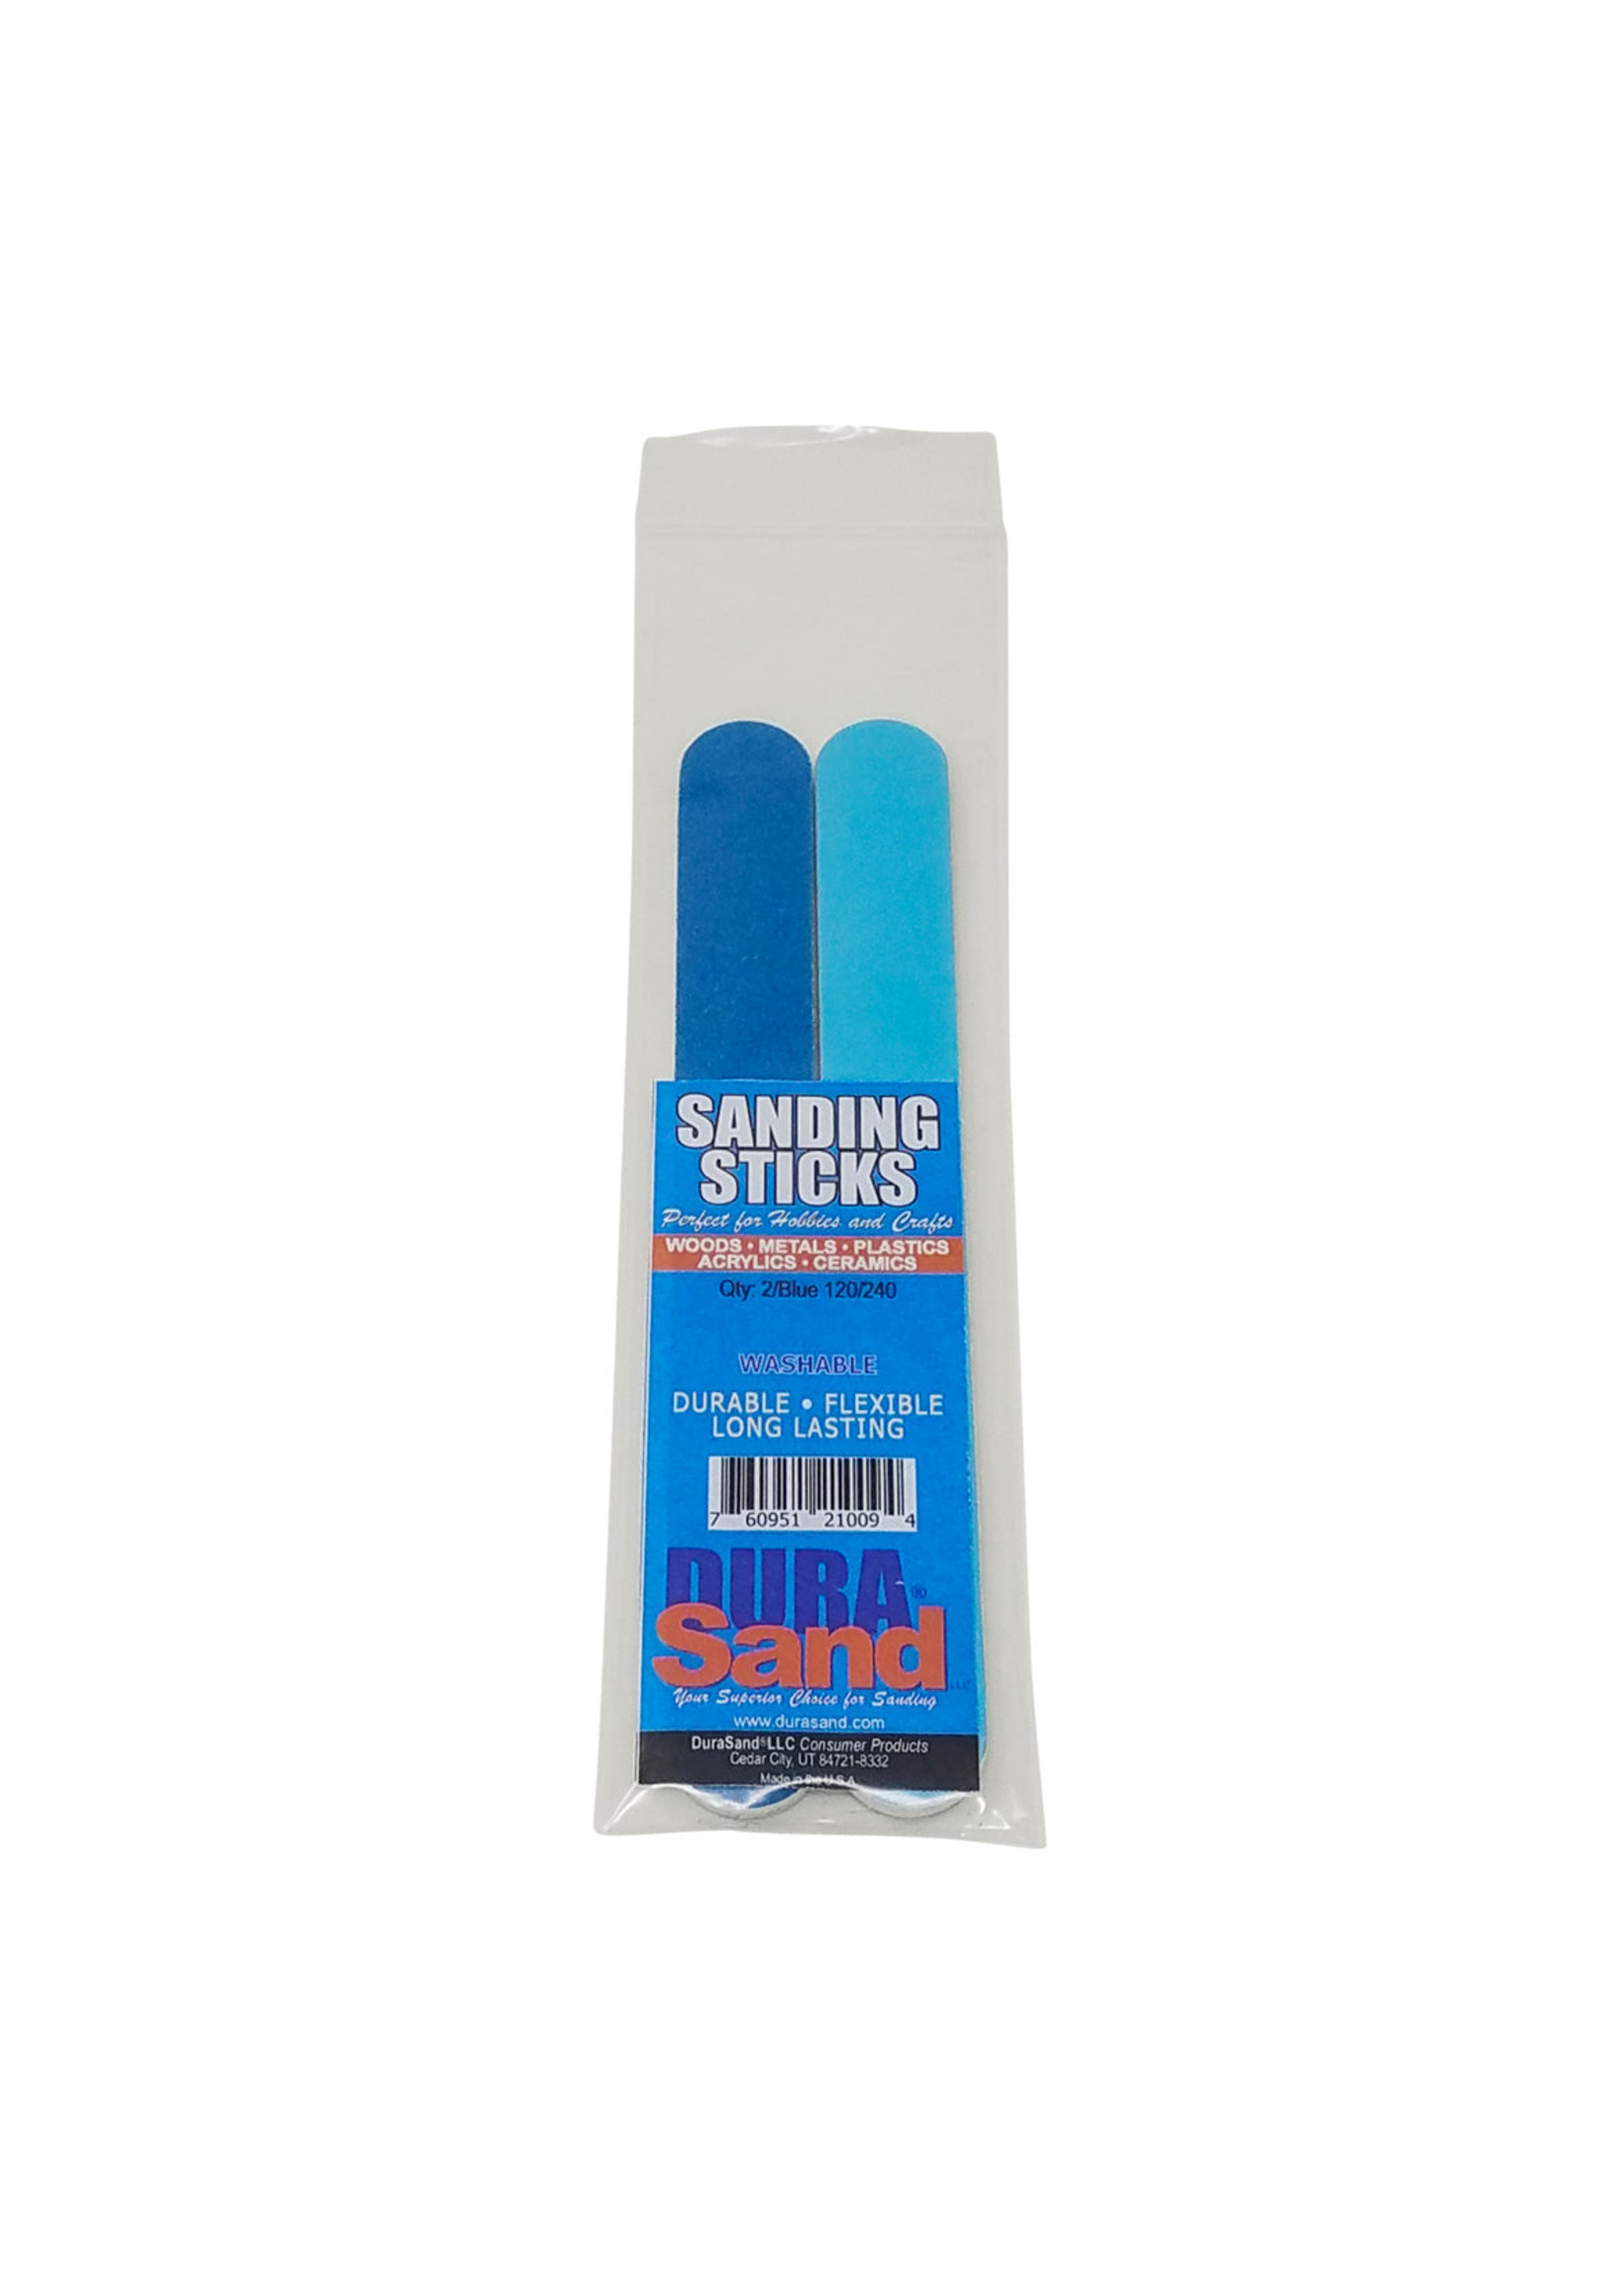 Durasand Sanding Sticks, 2 Pieces, 120/240 Grit - Blue